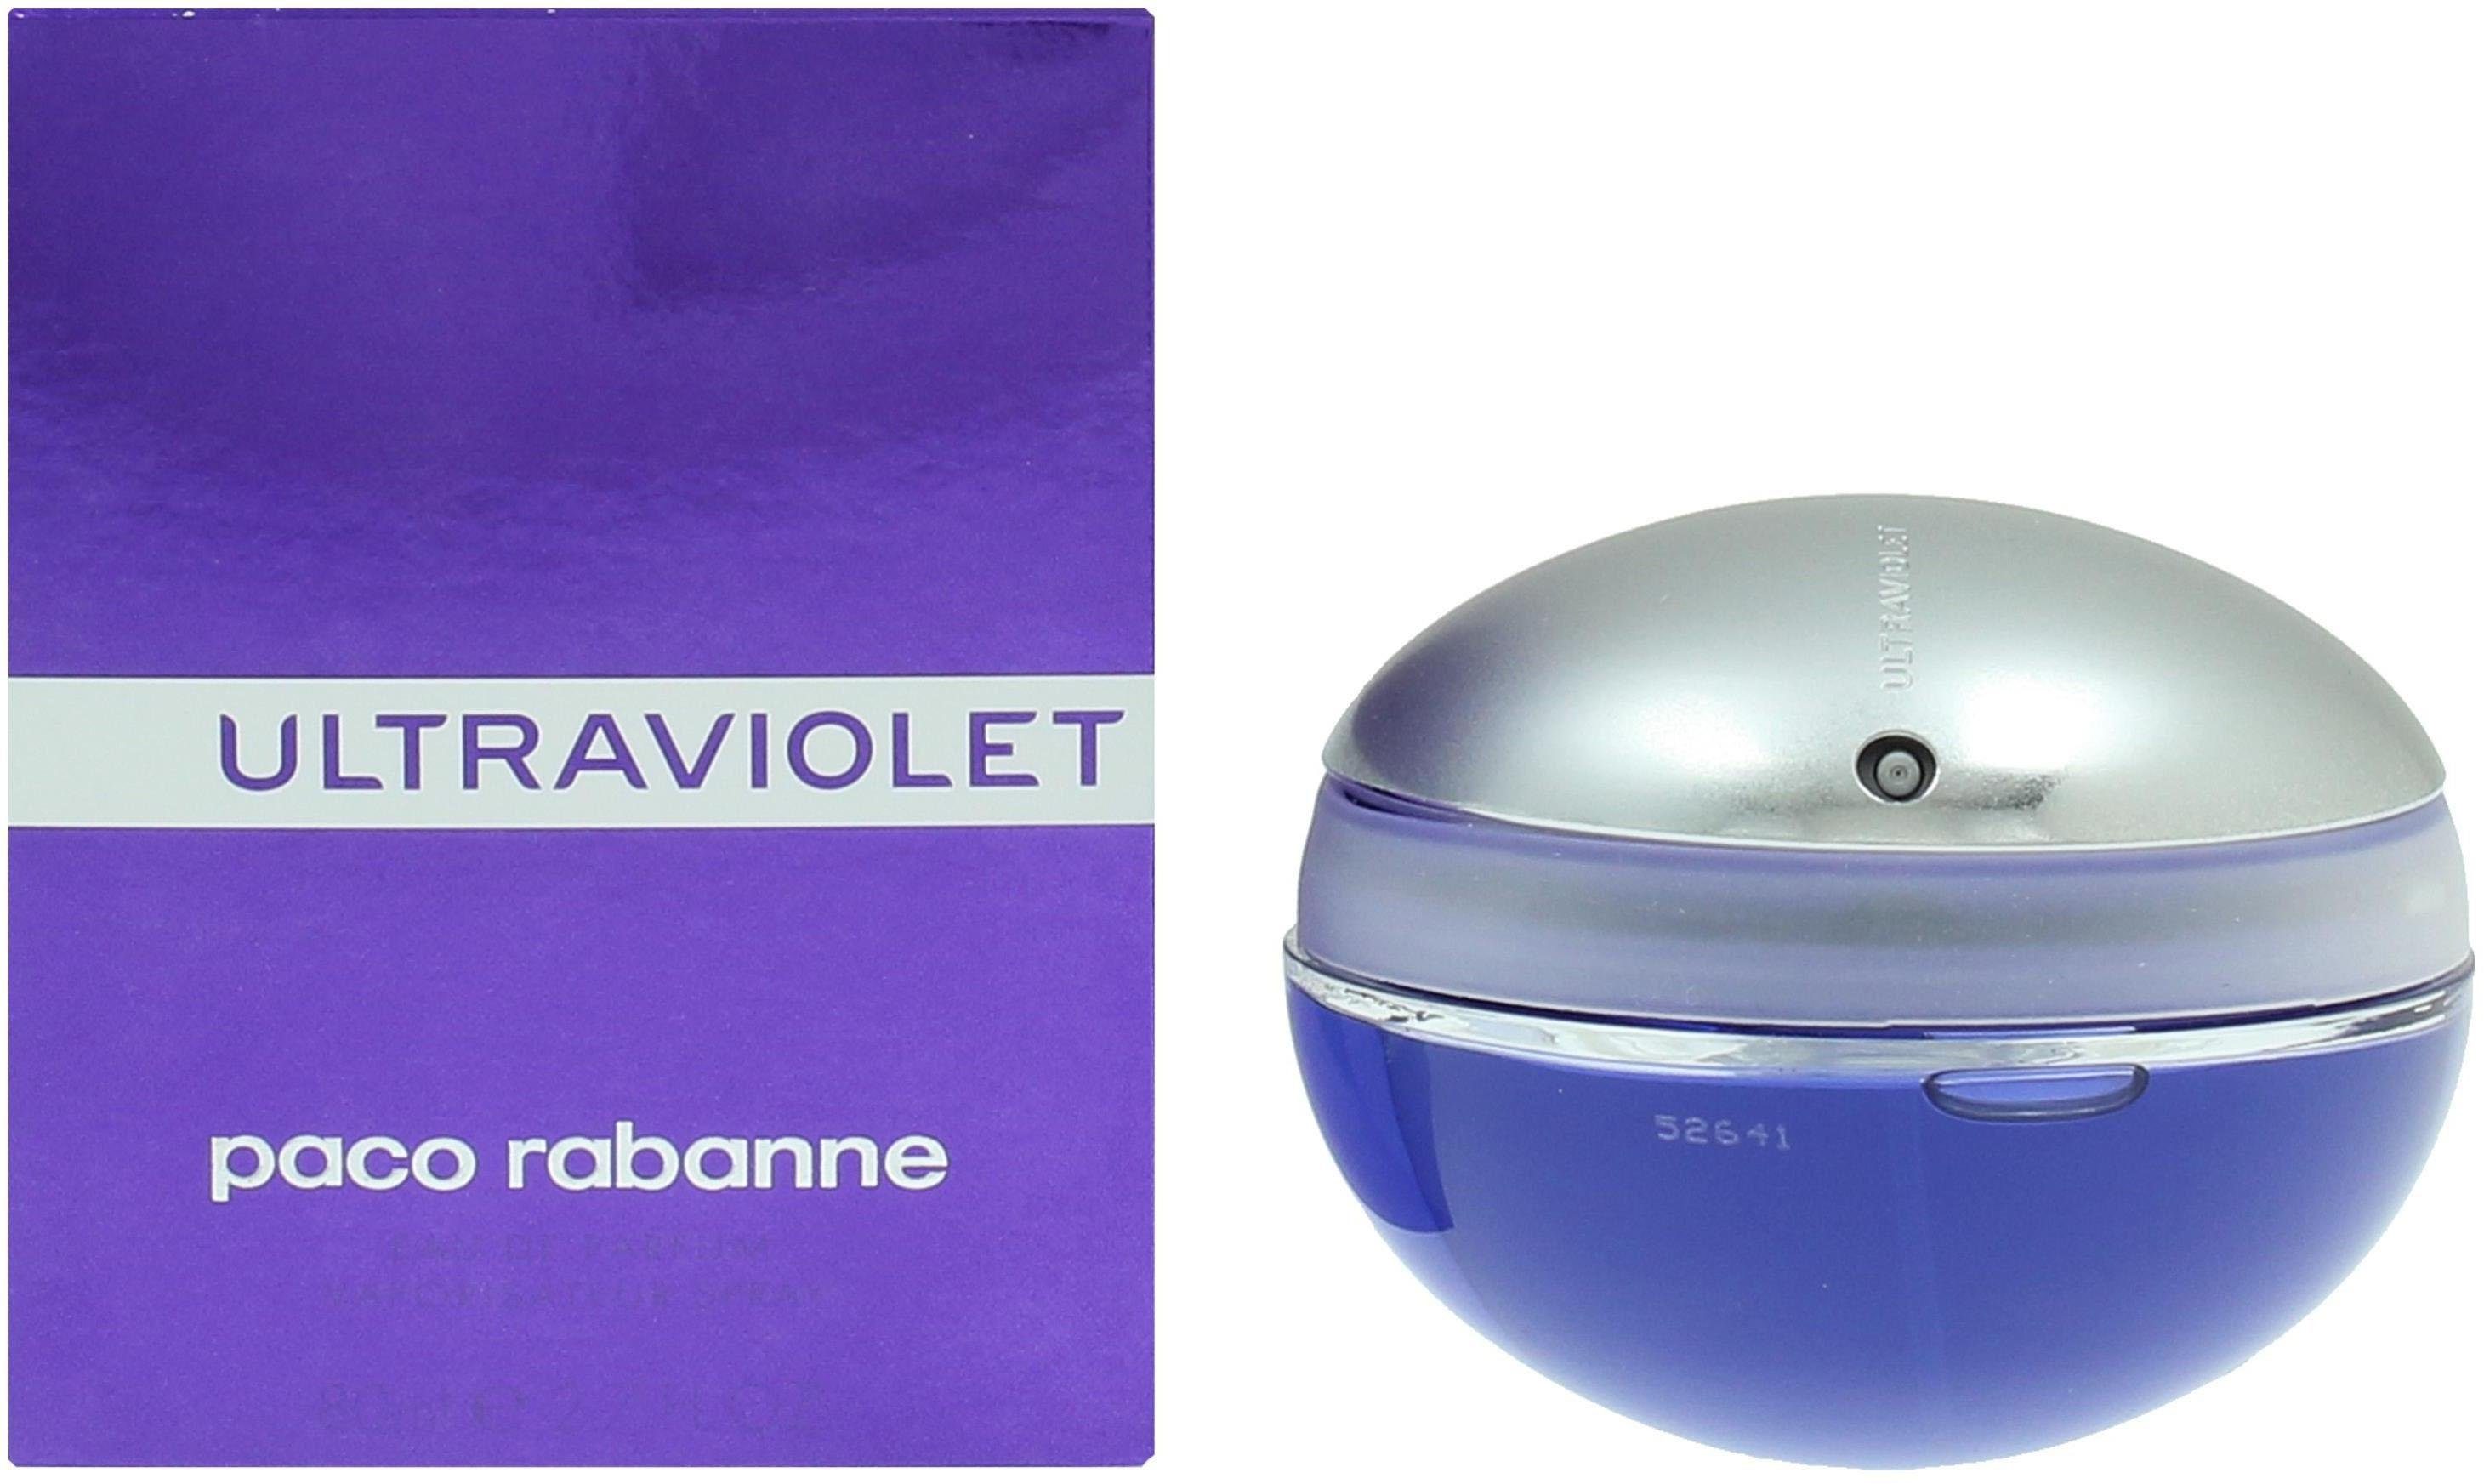 de paco Eau Woman Ultraviolet Parfum rabanne